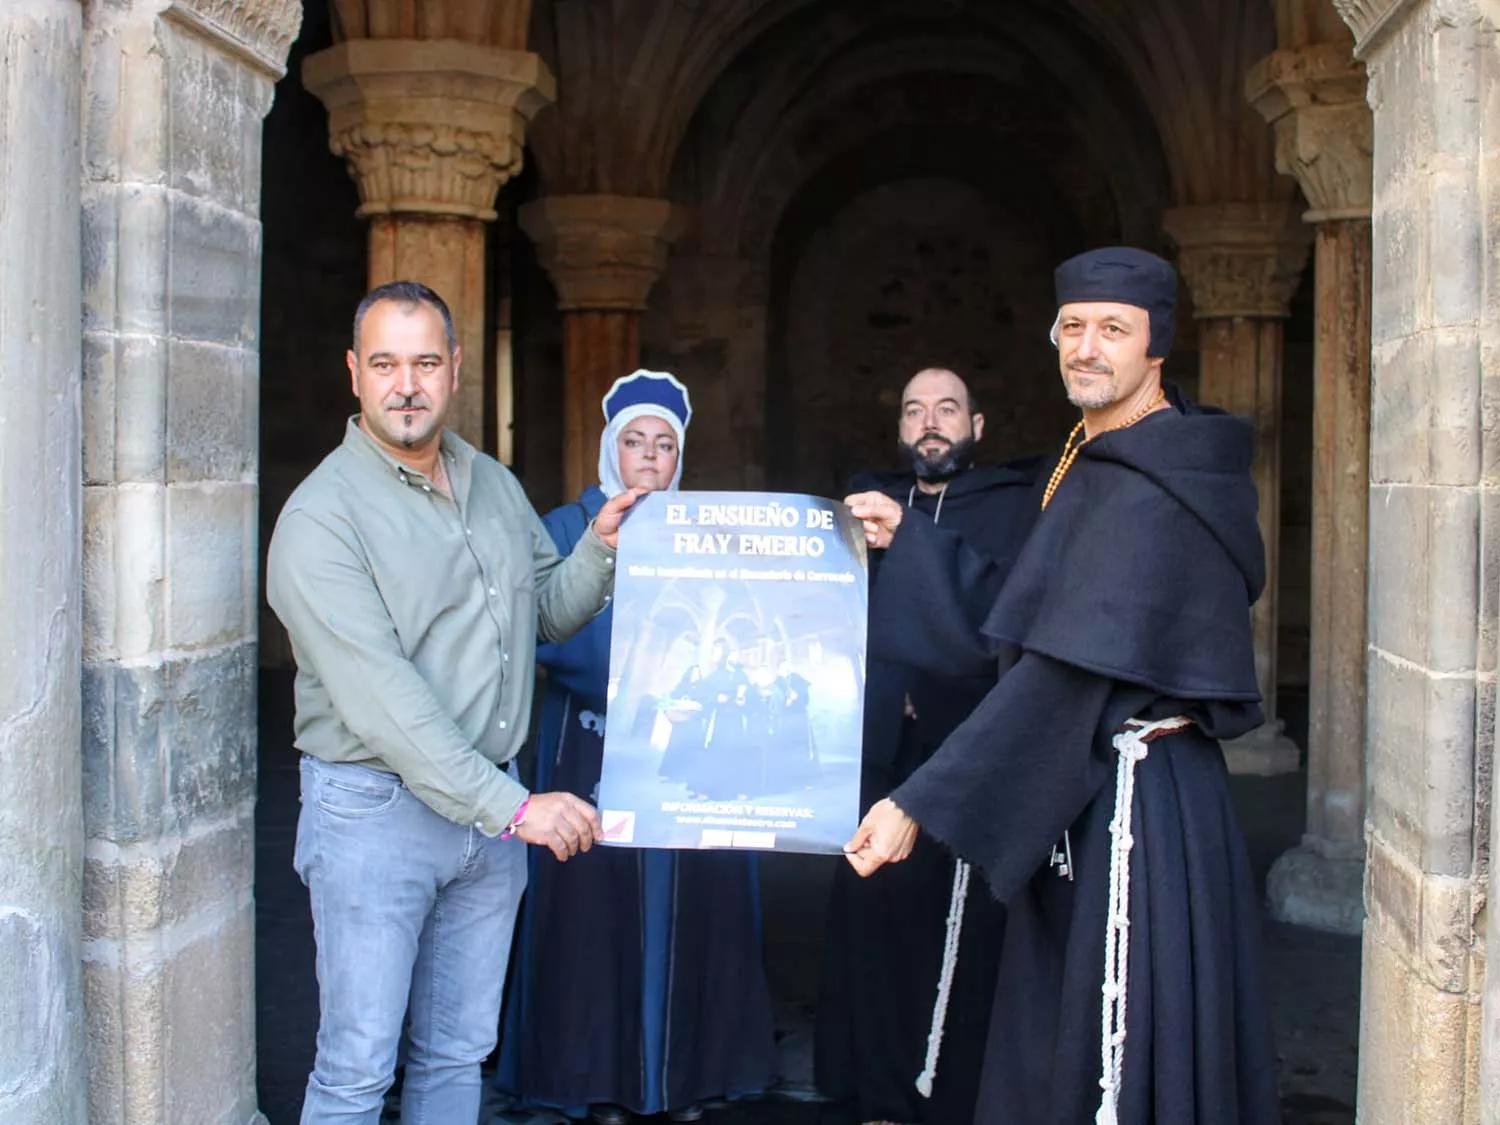 Monjes, reinas y abades regresan al monasterio de Carracedo gracias a las visitas teatralizadas